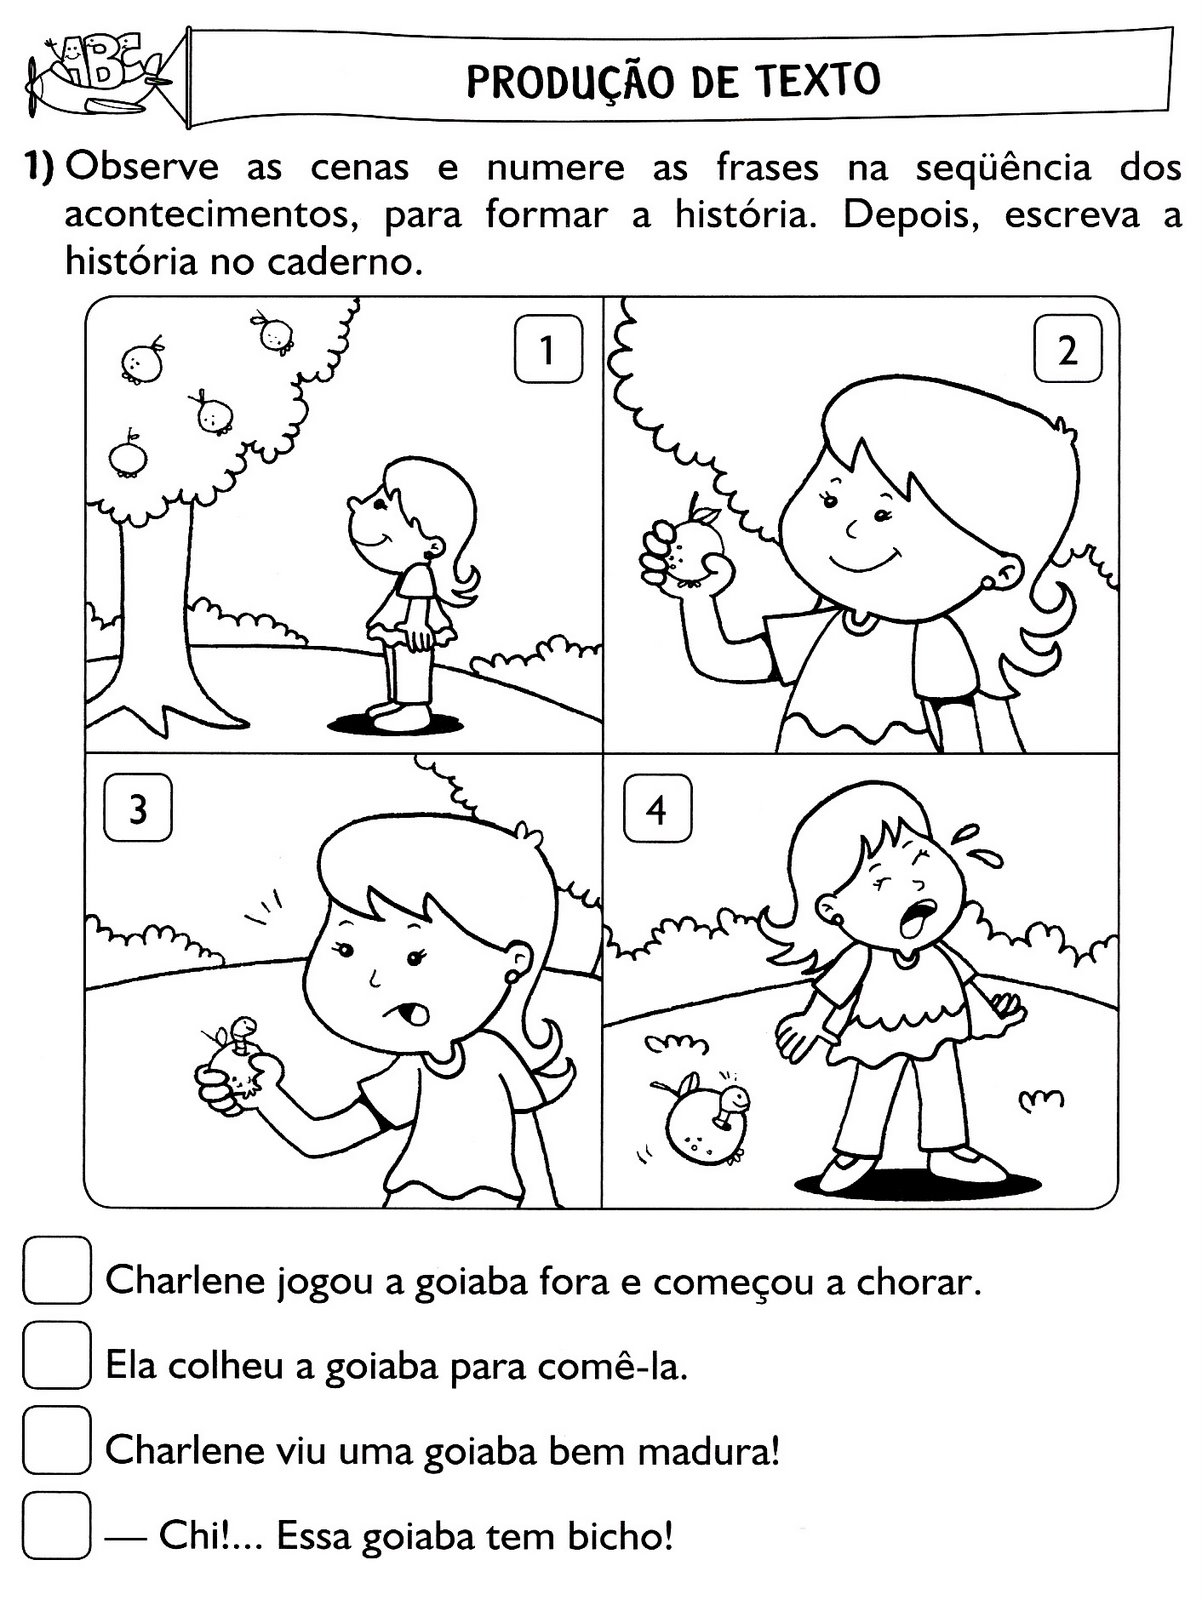 www.ensinar-aprender.blogspot.comhist. em sequencia ilustrada e com frases